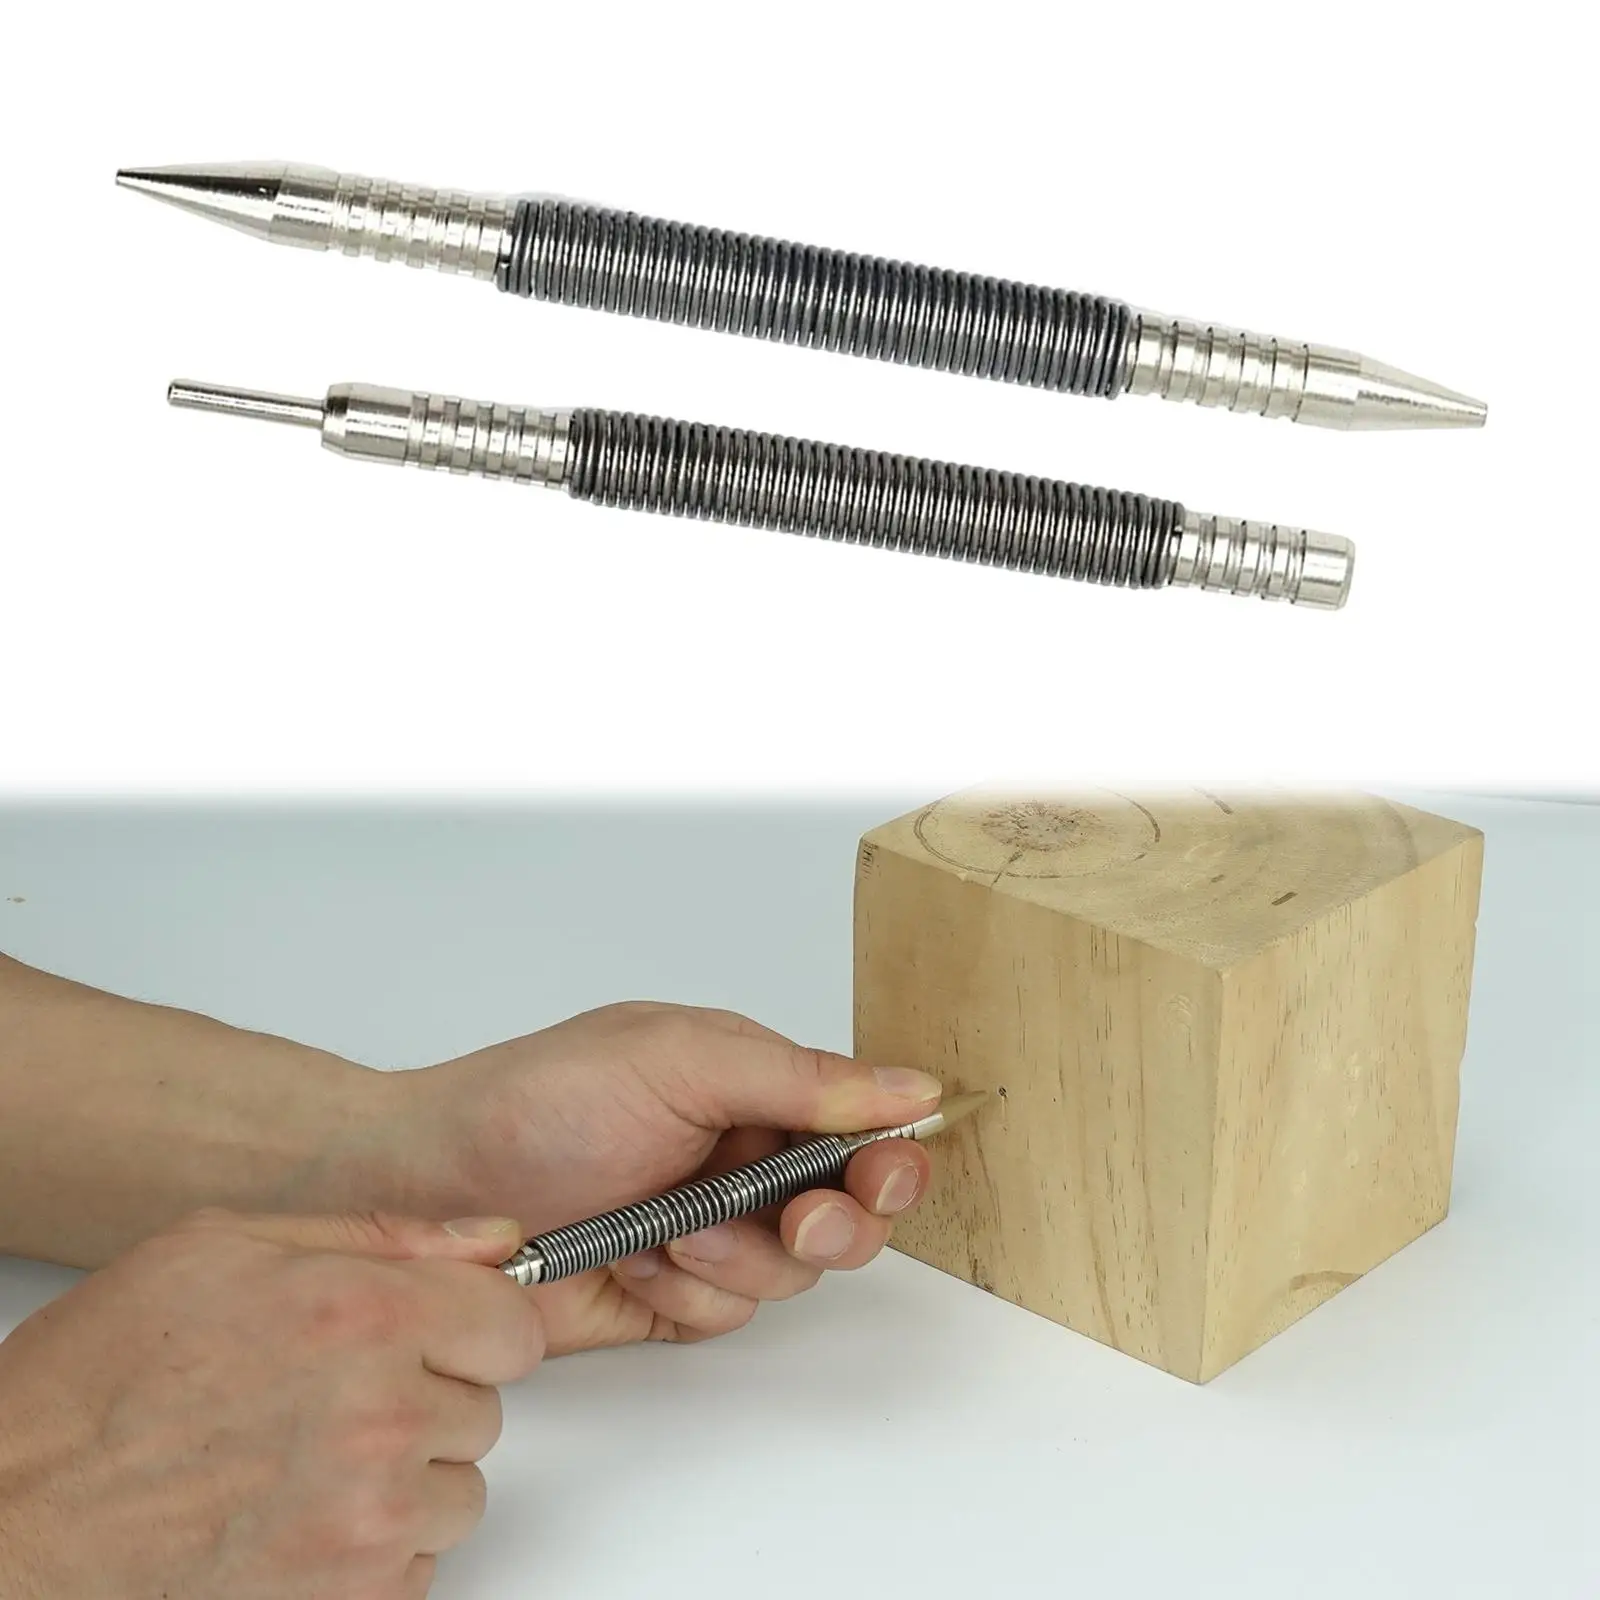 2Pcs Nail Set and Hinge Pin Tool Carbon Steel Spring Pin Punch